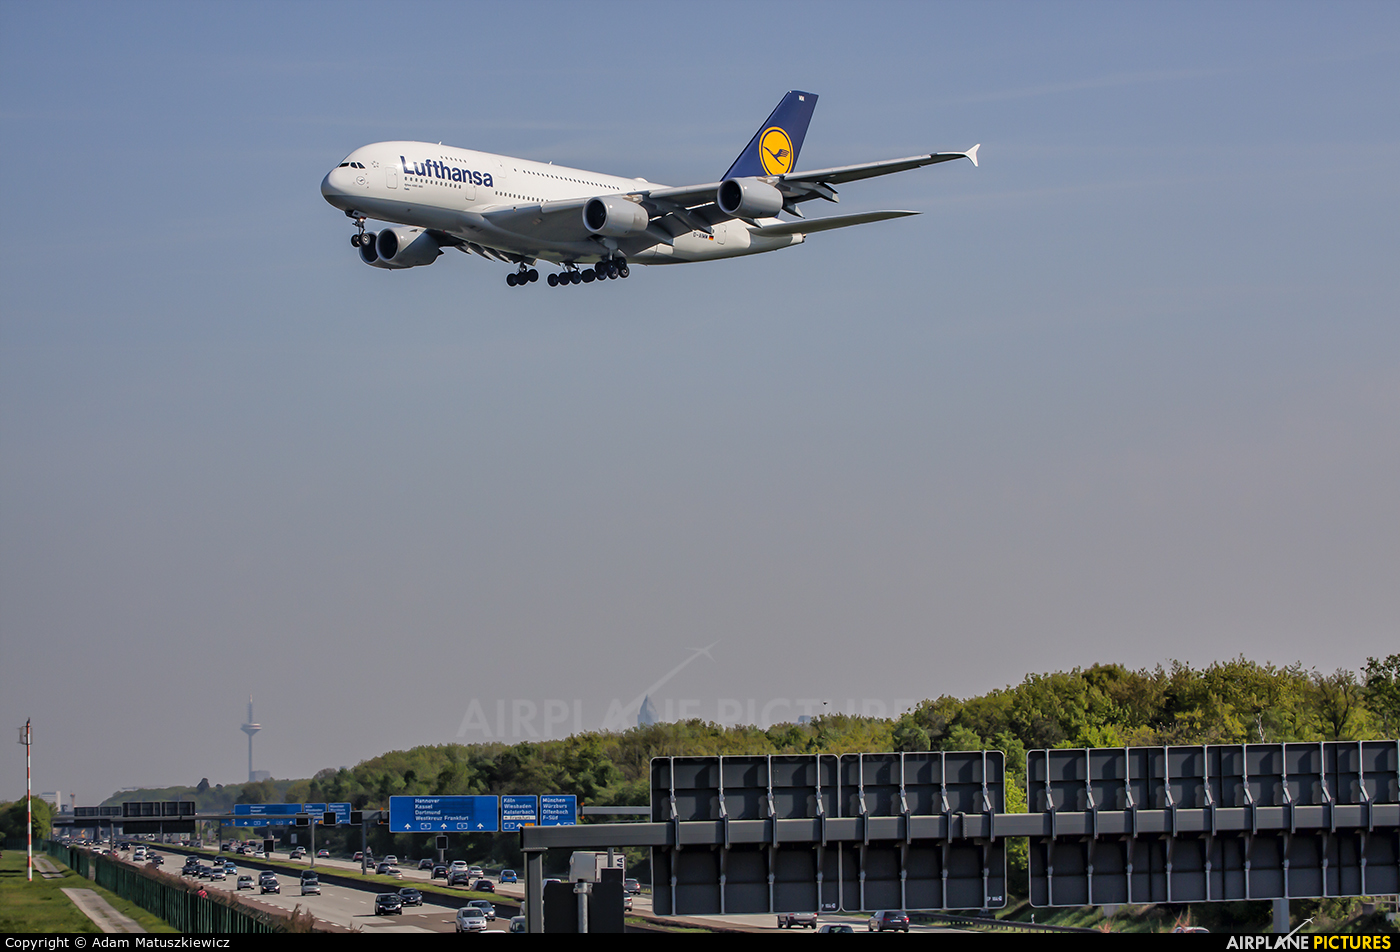 Lufthansa D-AIMM aircraft at Frankfurt